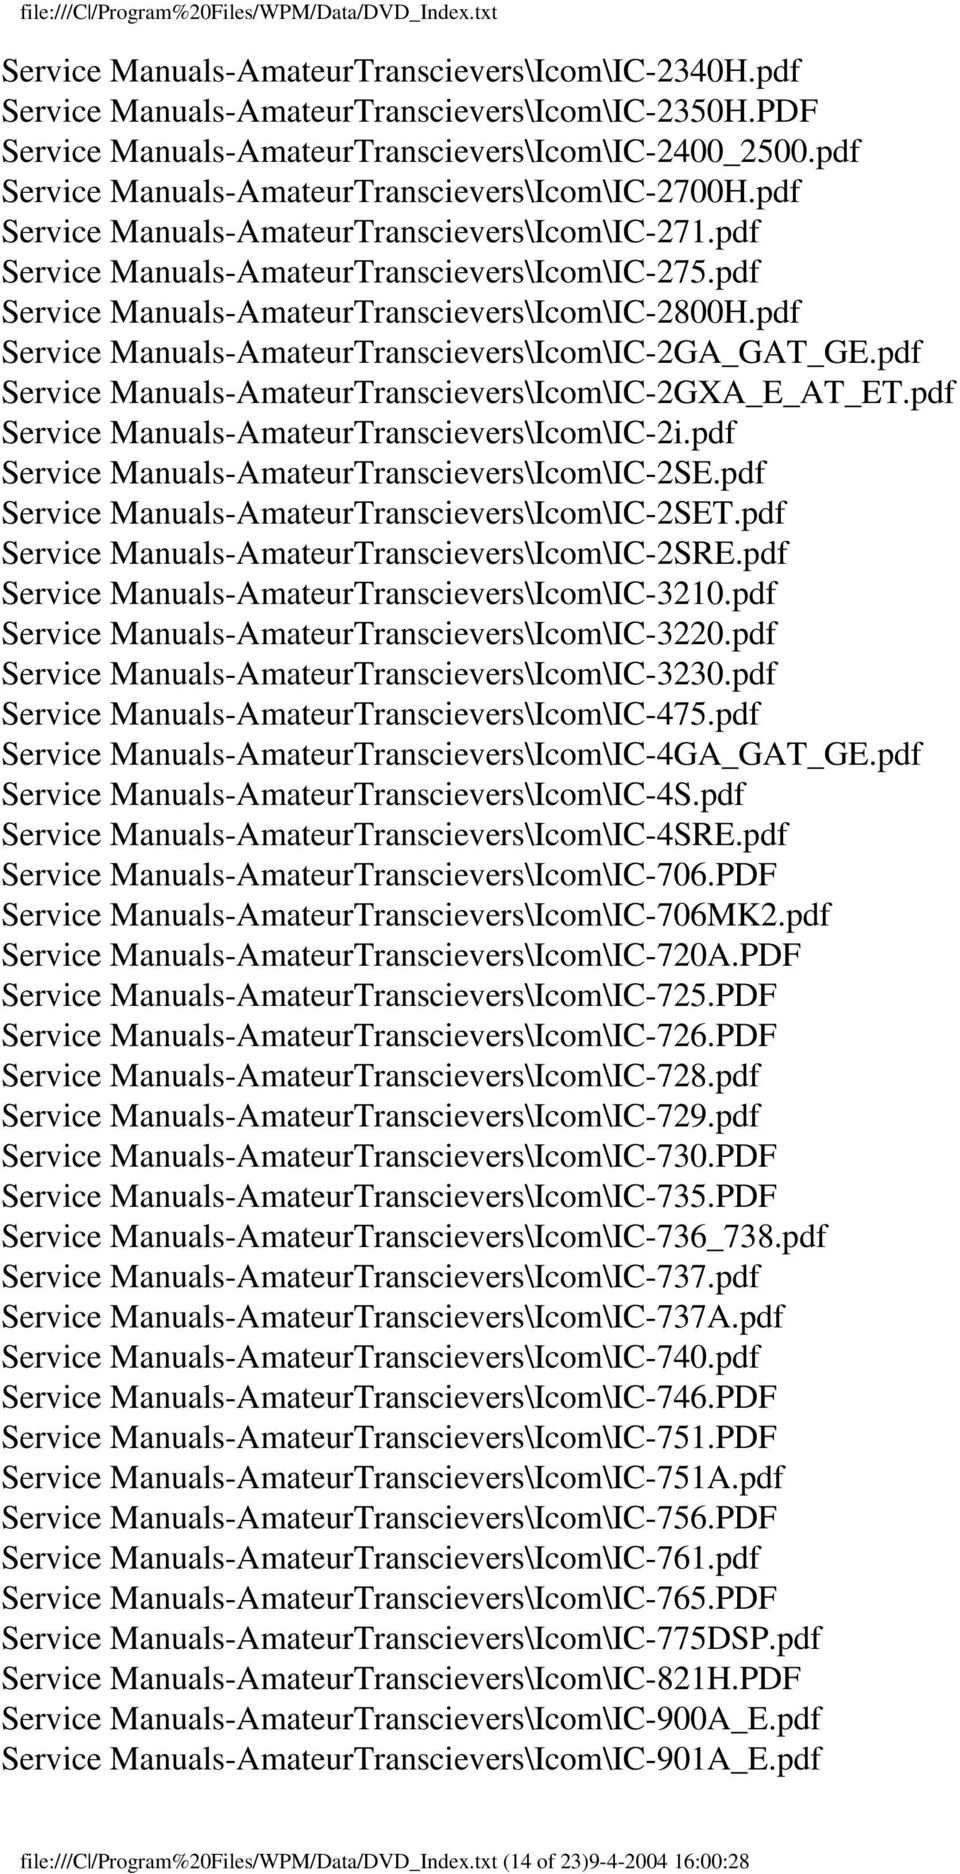 pdf Service Manuals-AmateurTranscievers\Icom\IC-2800H.pdf Service Manuals-AmateurTranscievers\Icom\IC-2GA_GAT_GE.pdf Service Manuals-AmateurTranscievers\Icom\IC-2GXA_E_AT_ET.